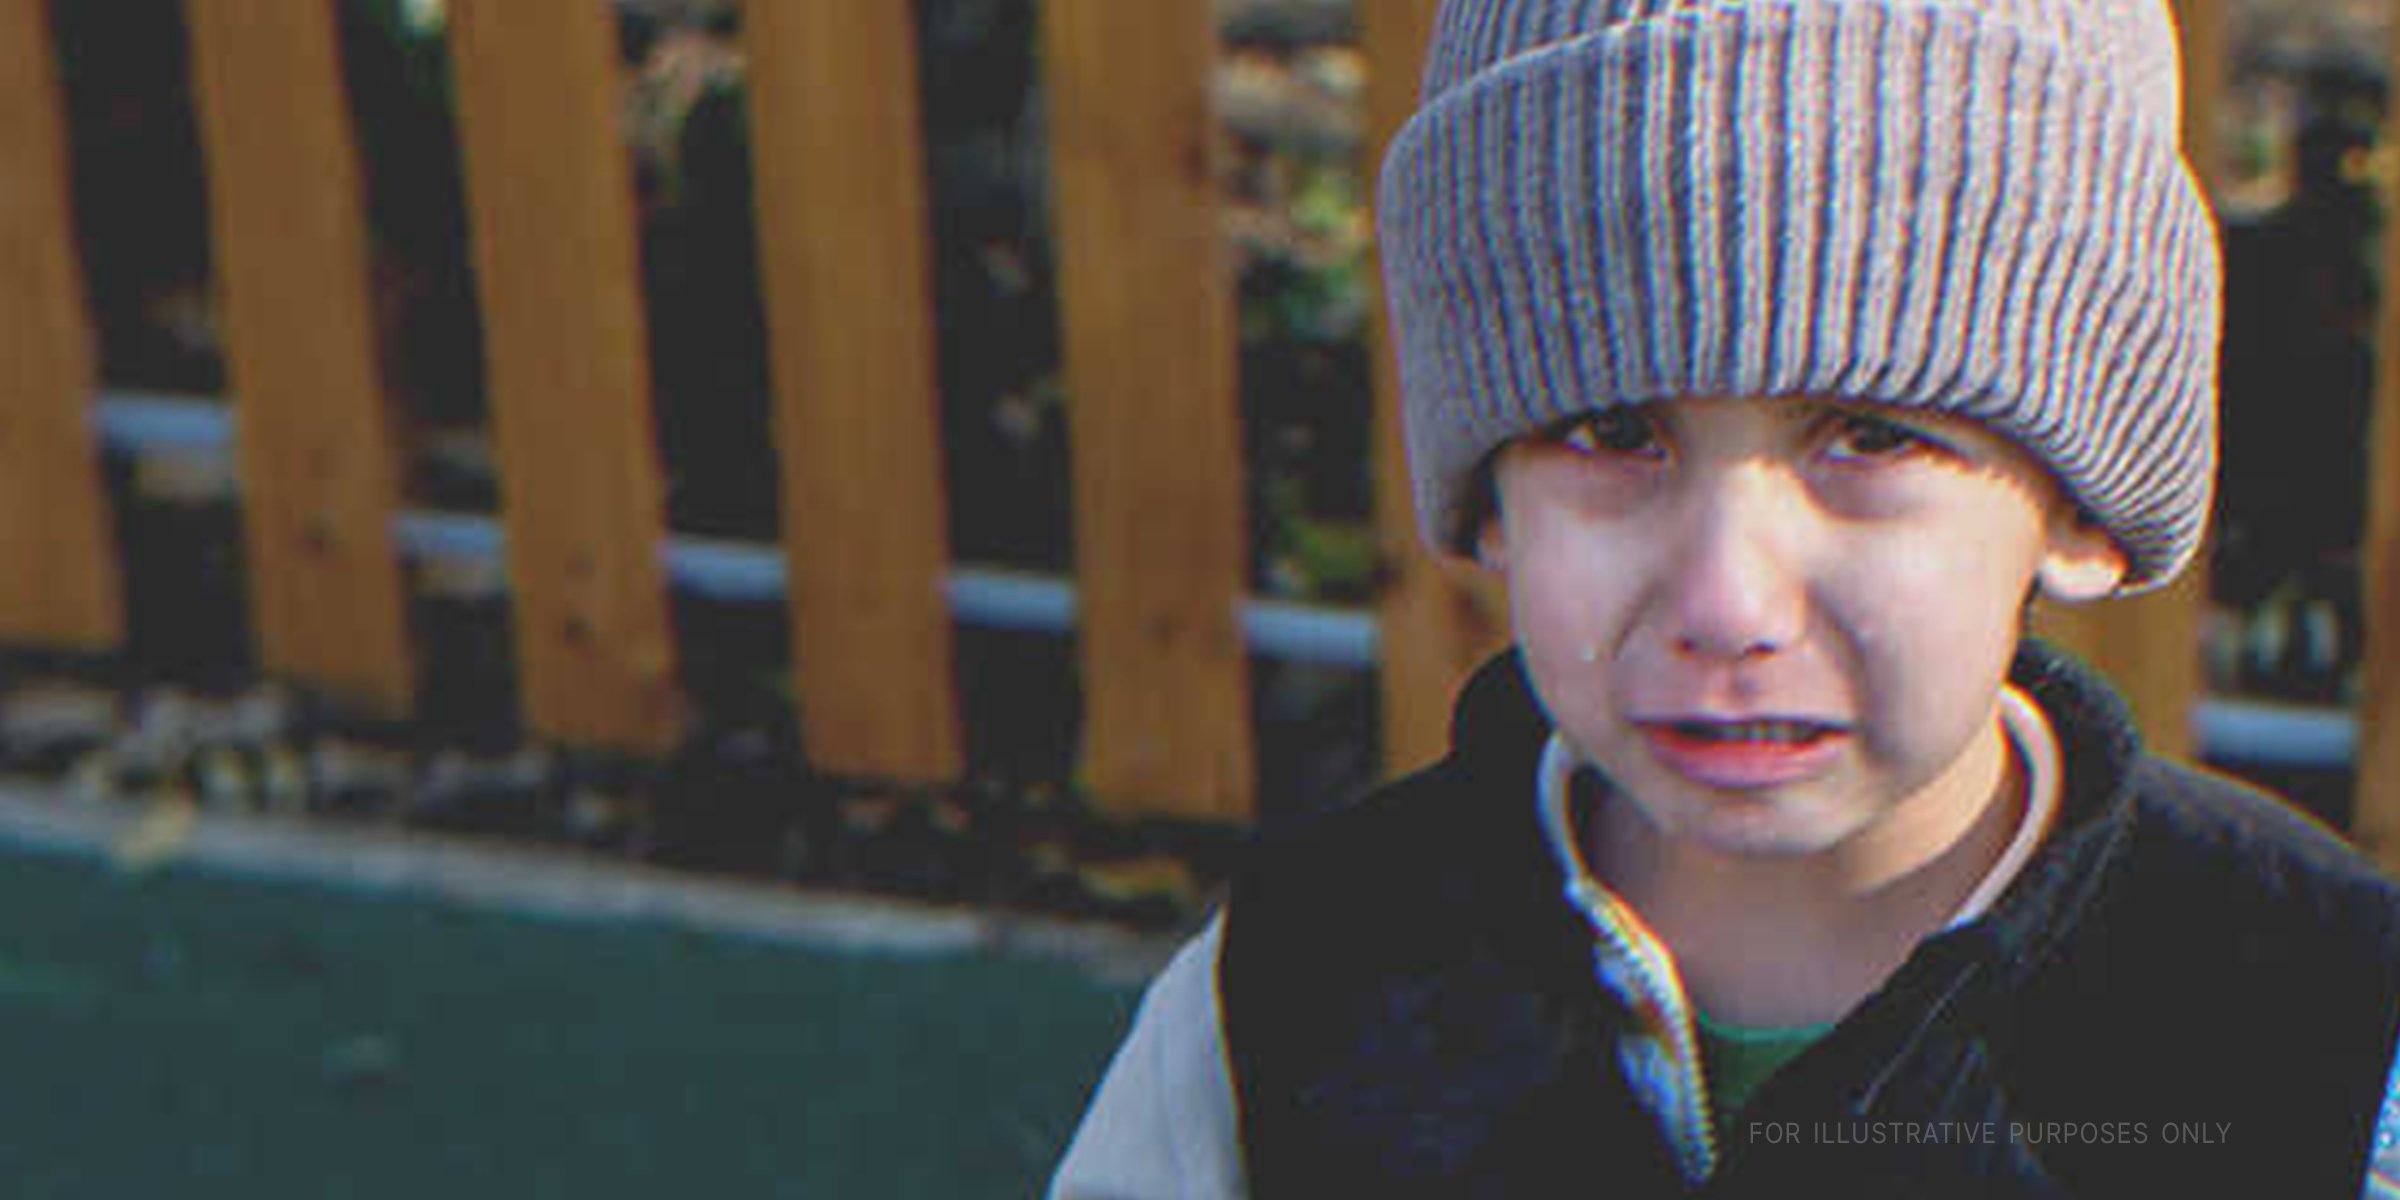 Junger Junge weint | Quelle: Shutterstock